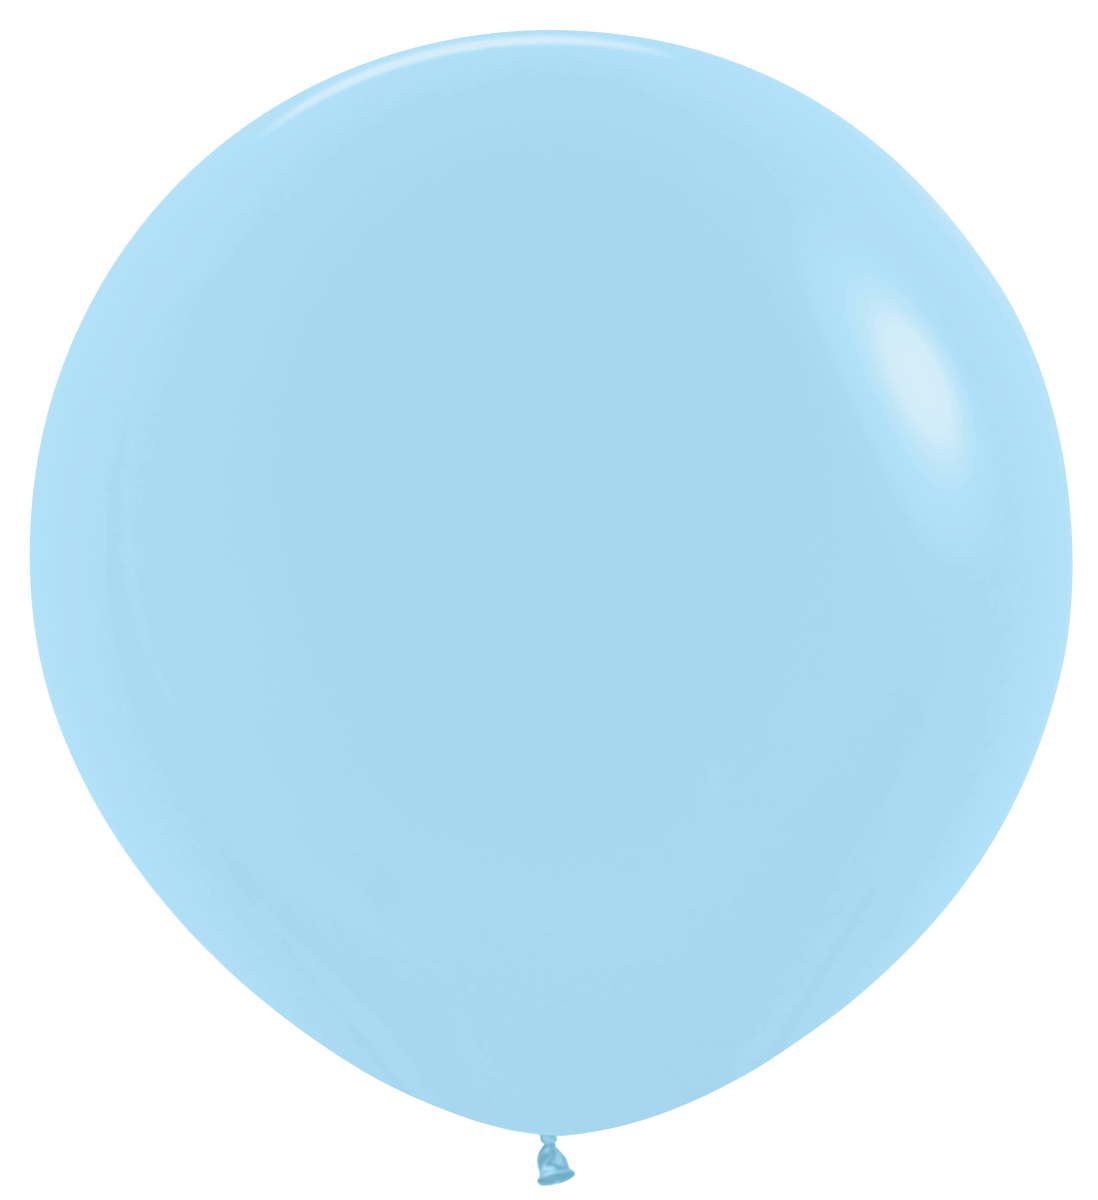 Sempertex Pastel Matte Round Latex Balloons | All Sizes